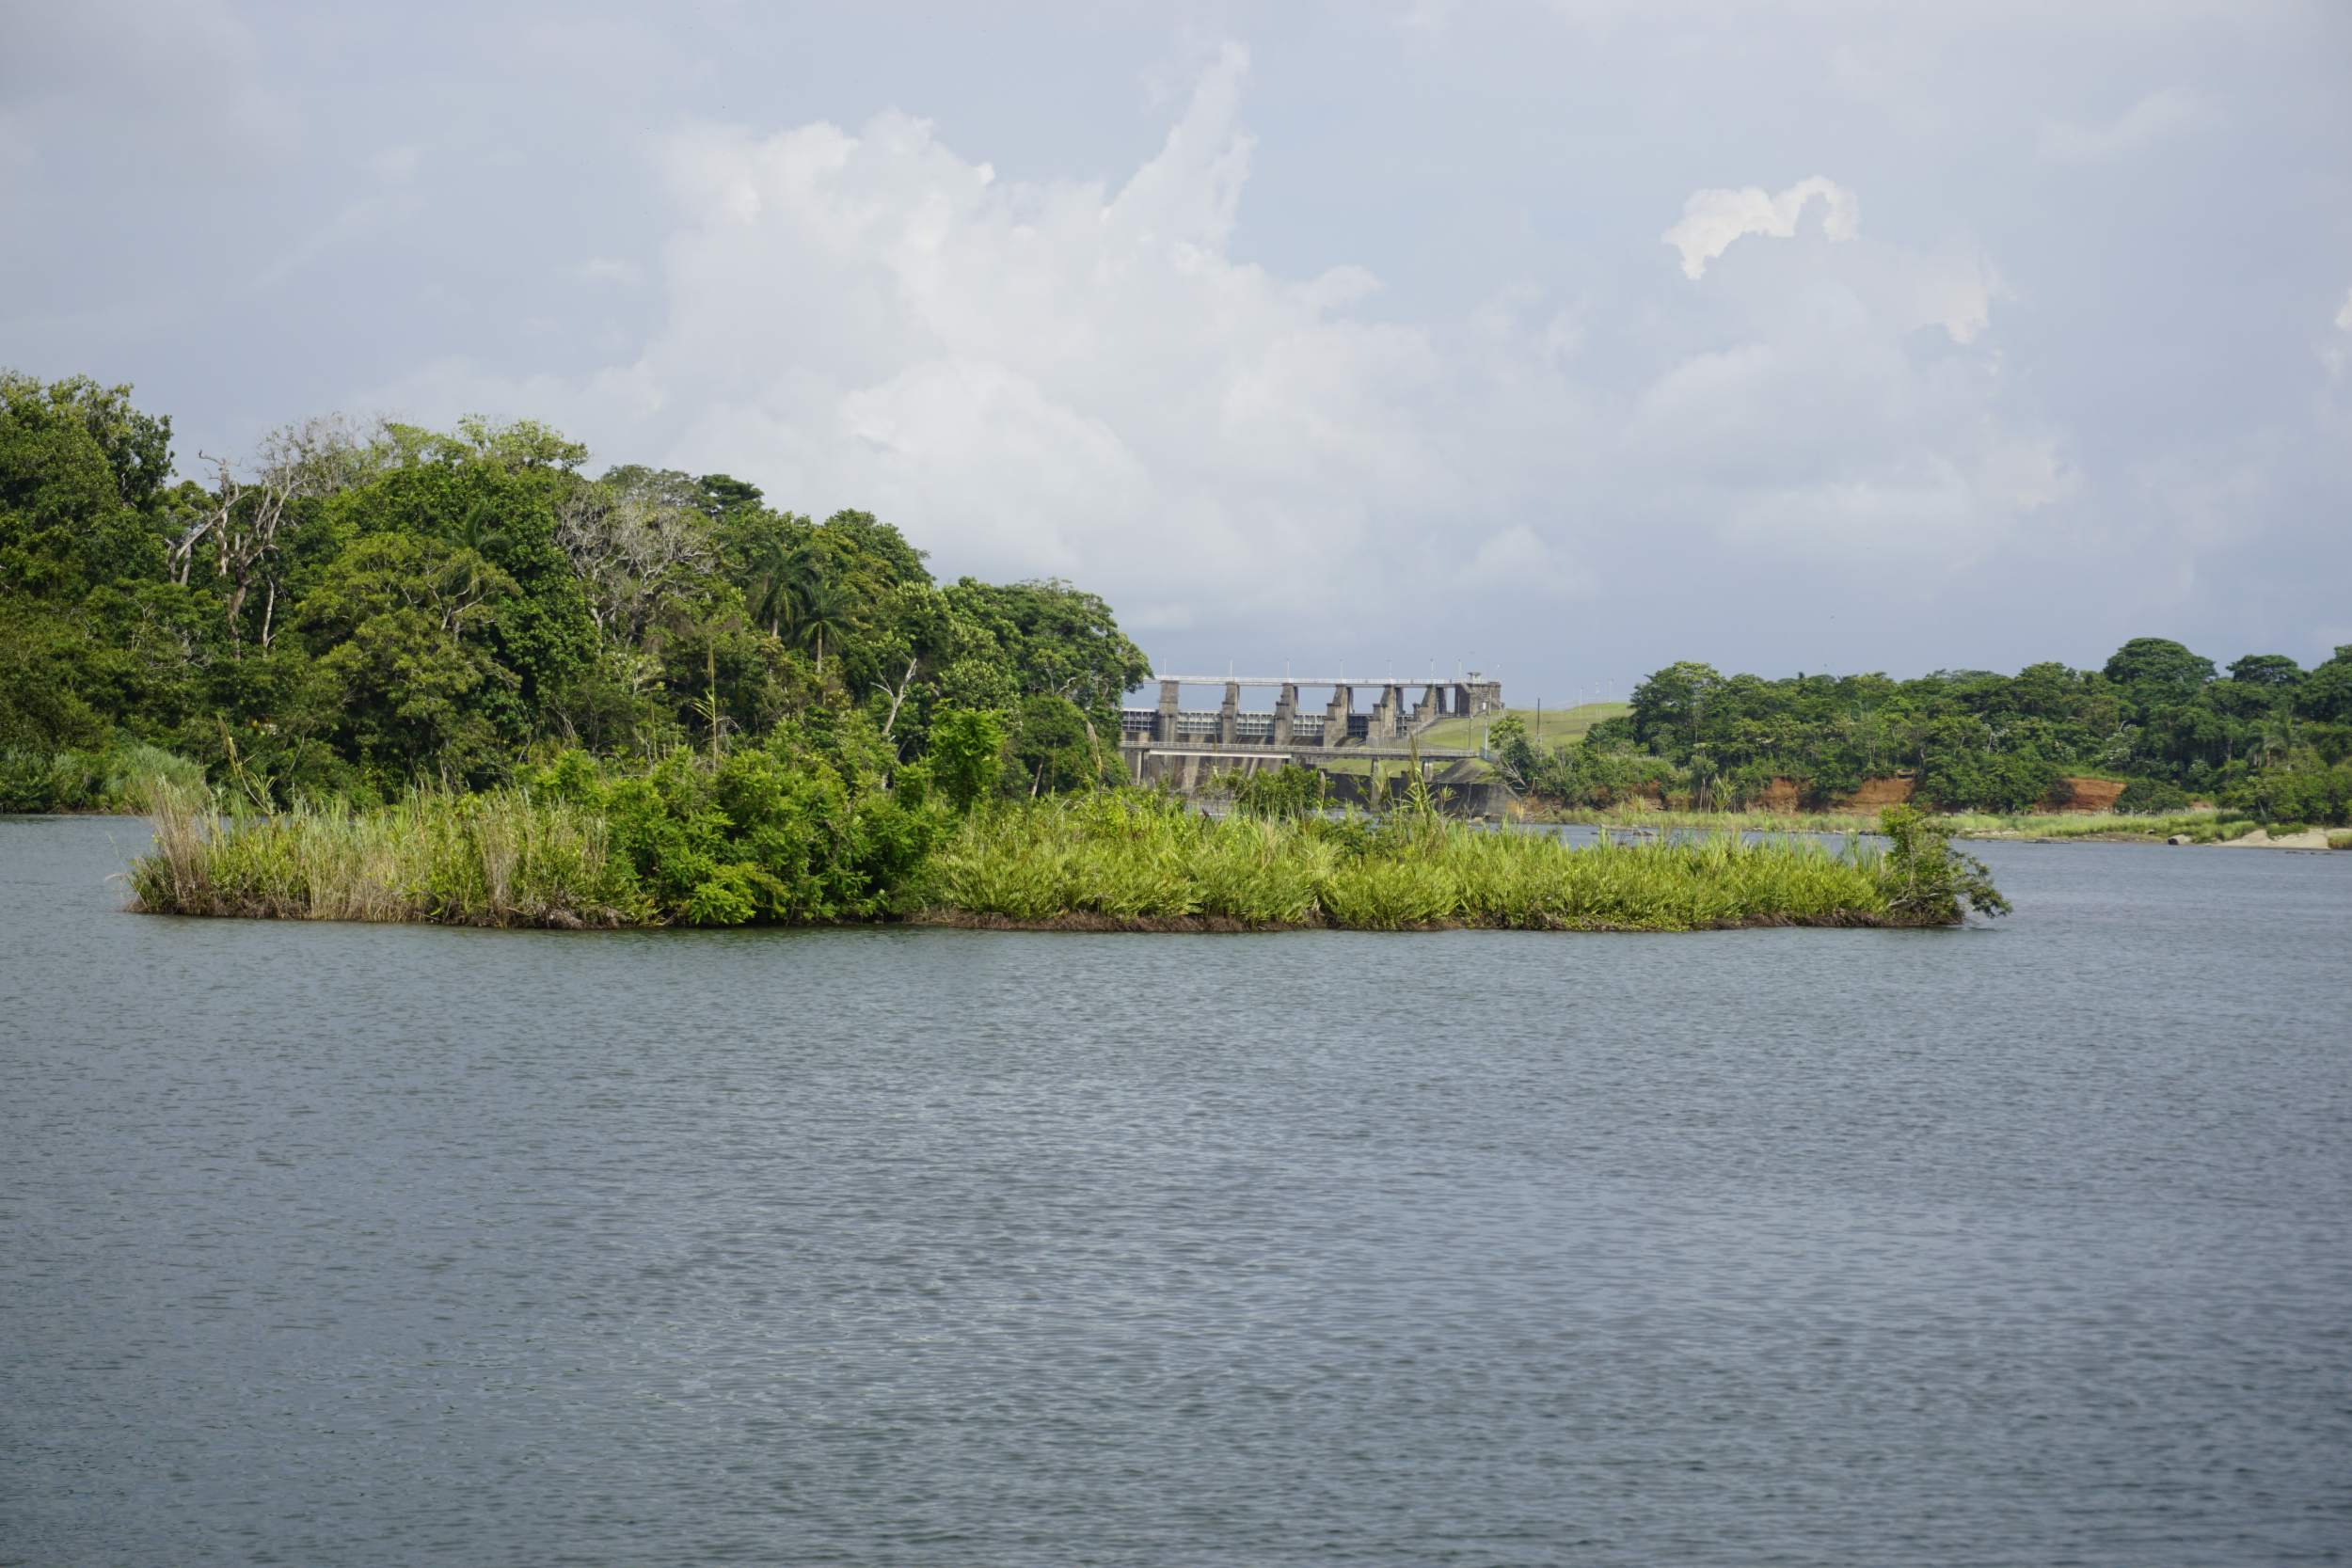 26. Gatun Dam, critical for the Panama Canal